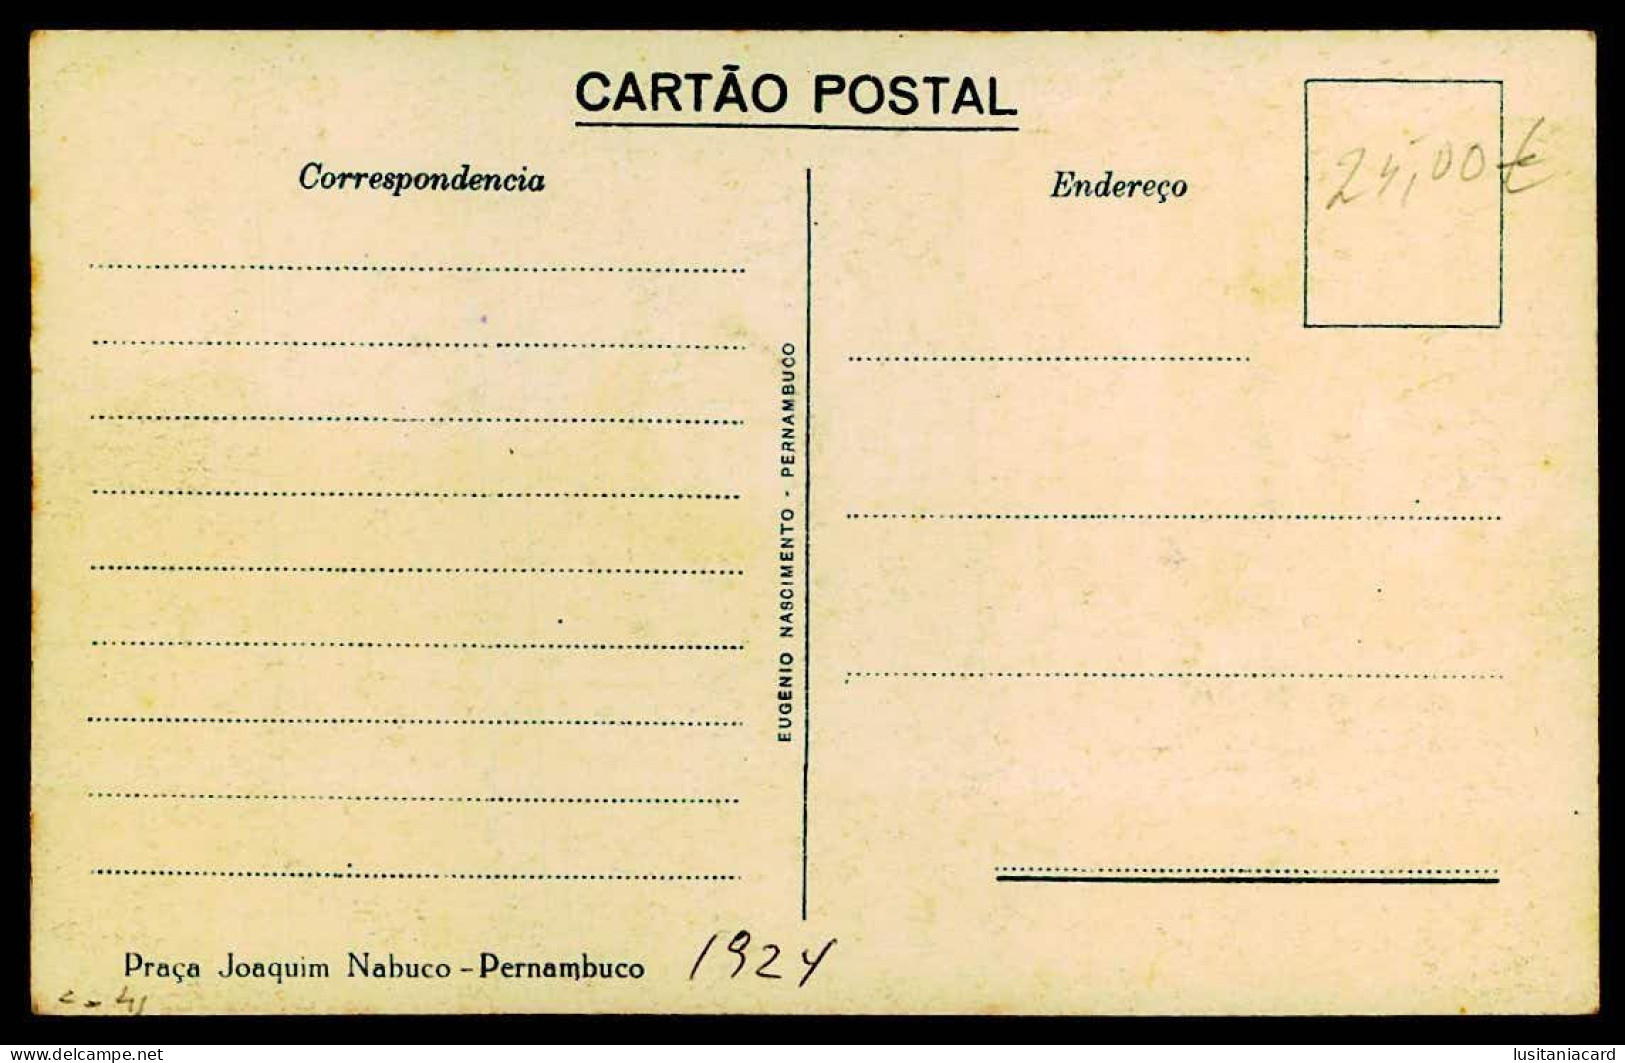 PERNAMBUCO - Praça Joaquim Nabuco (Ed. Eugenio Nascimento) Carte Postale - Recife